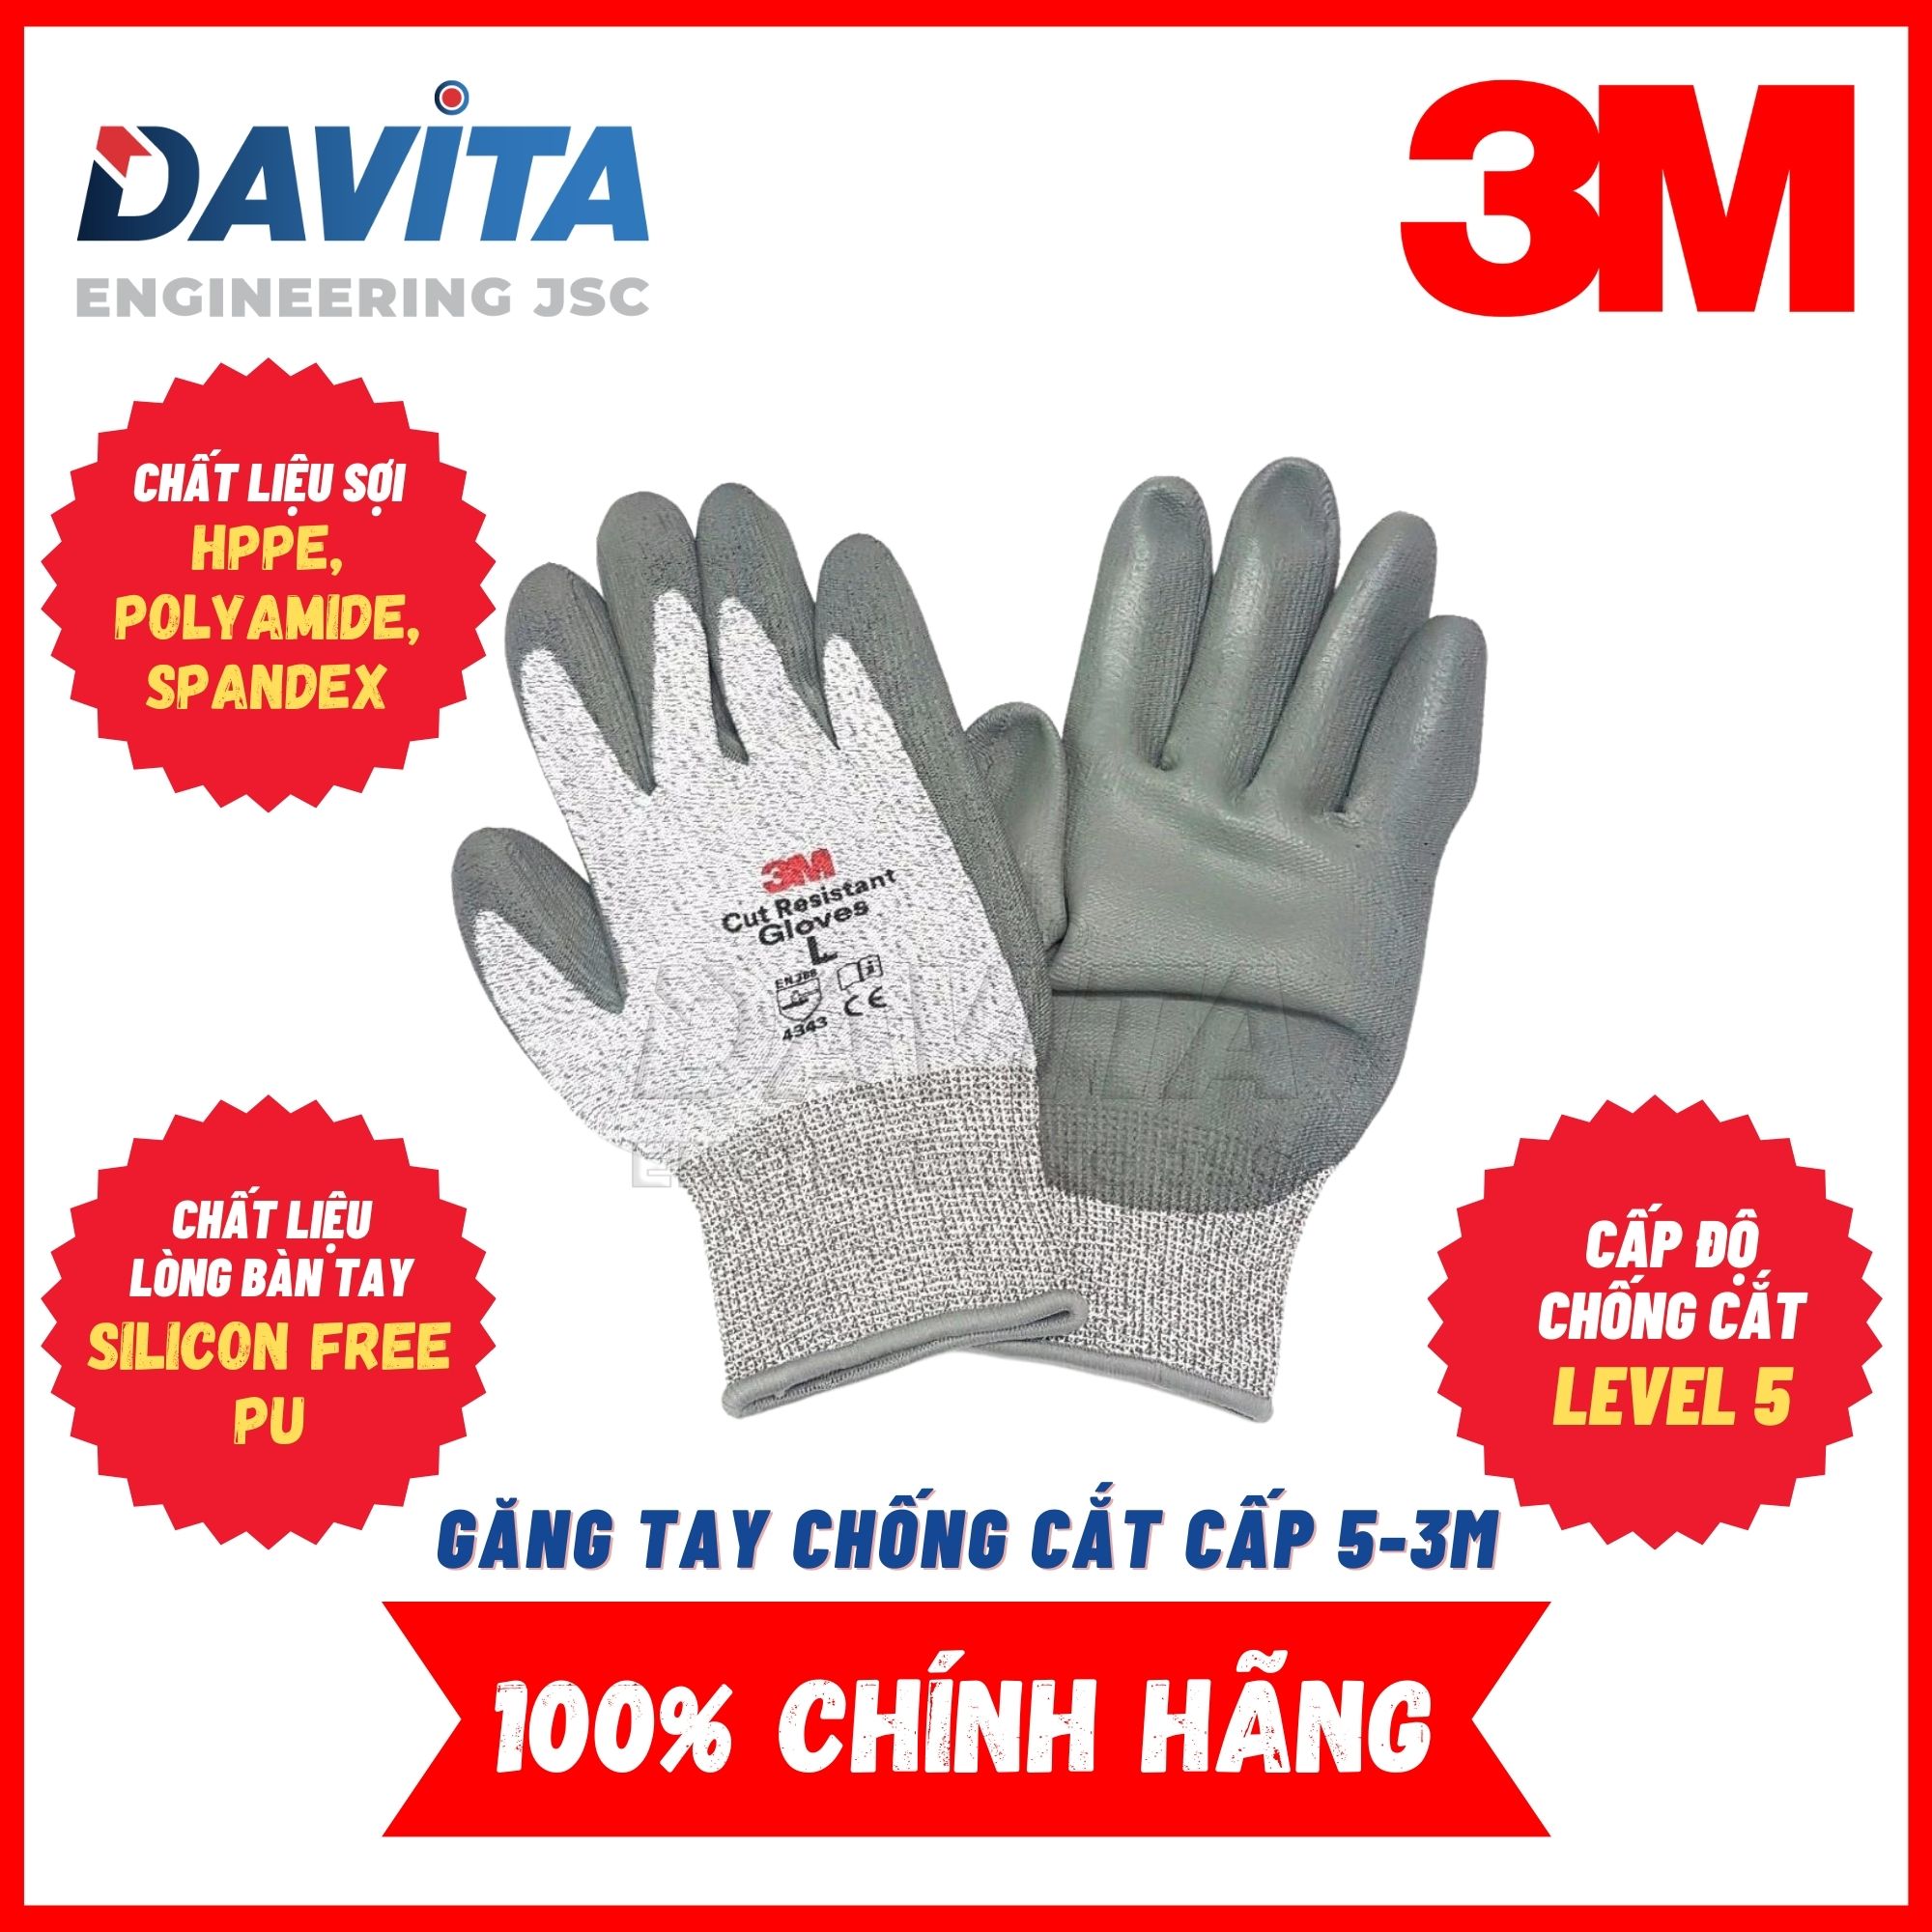 Găng tay chống cắt 3M cấp độ 5, size L, màu xám trắng